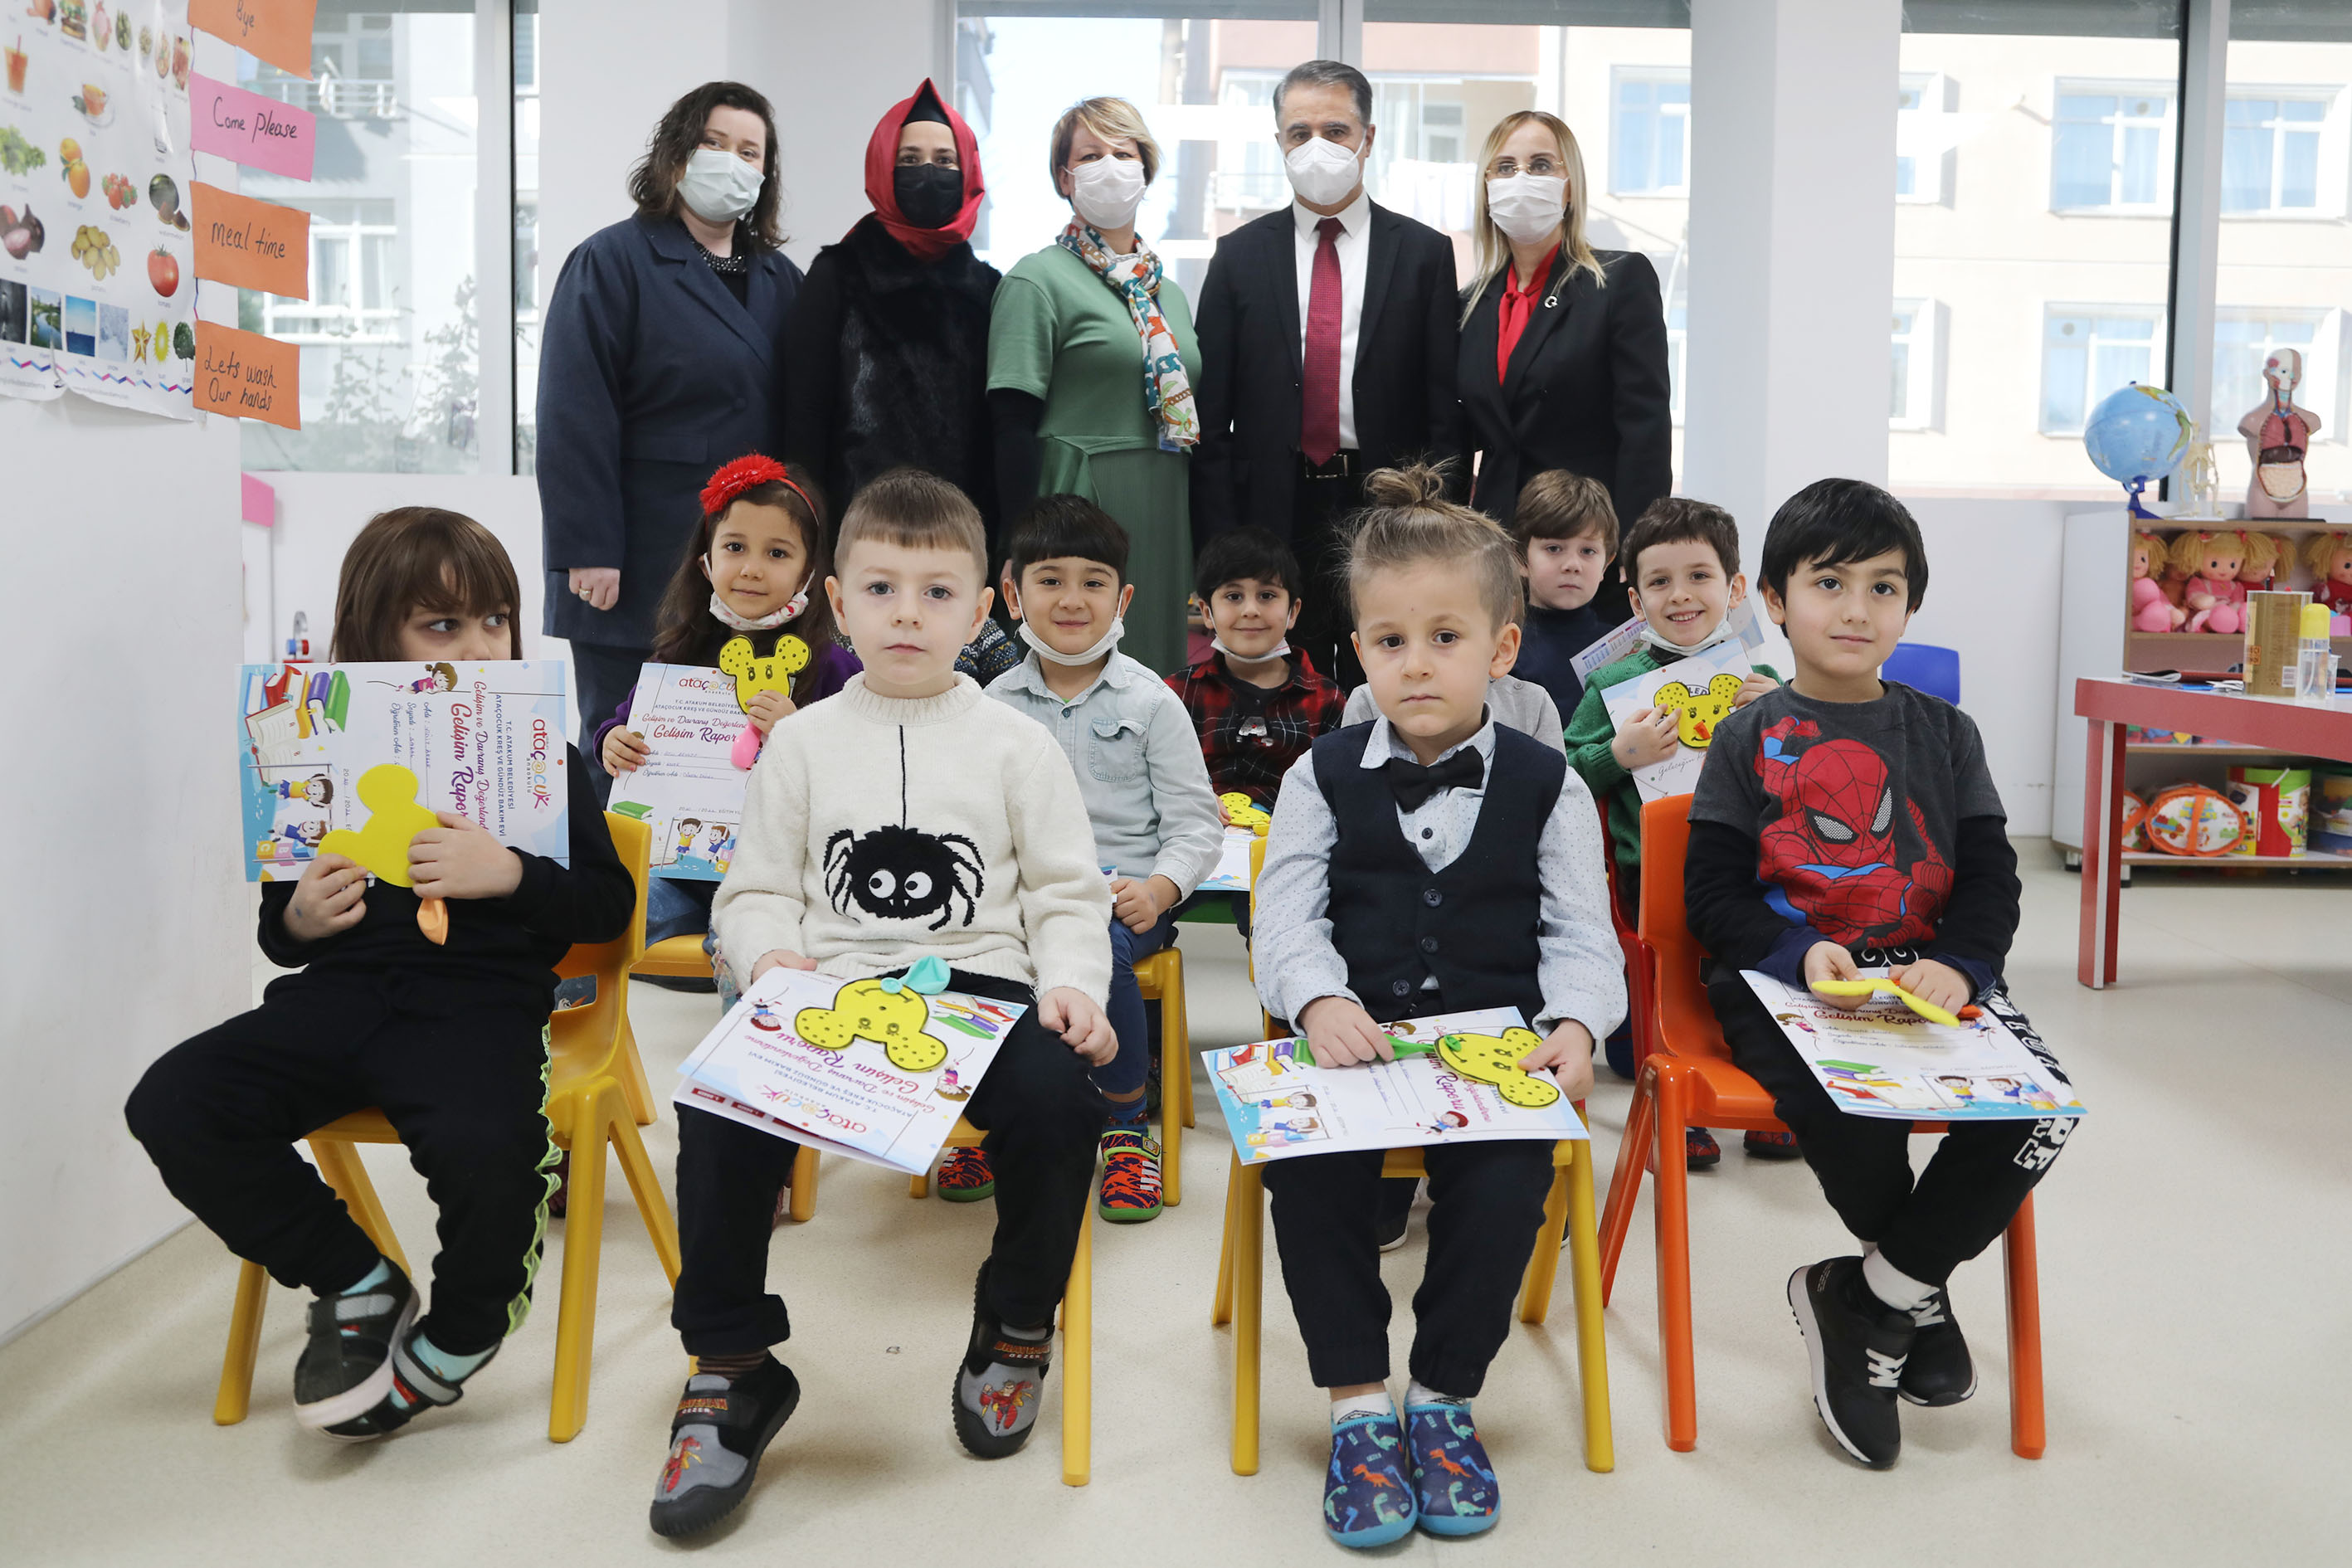 AtaÇocuklu minikler ilk karnelerini Başkan Cemil Deveci'den aldı